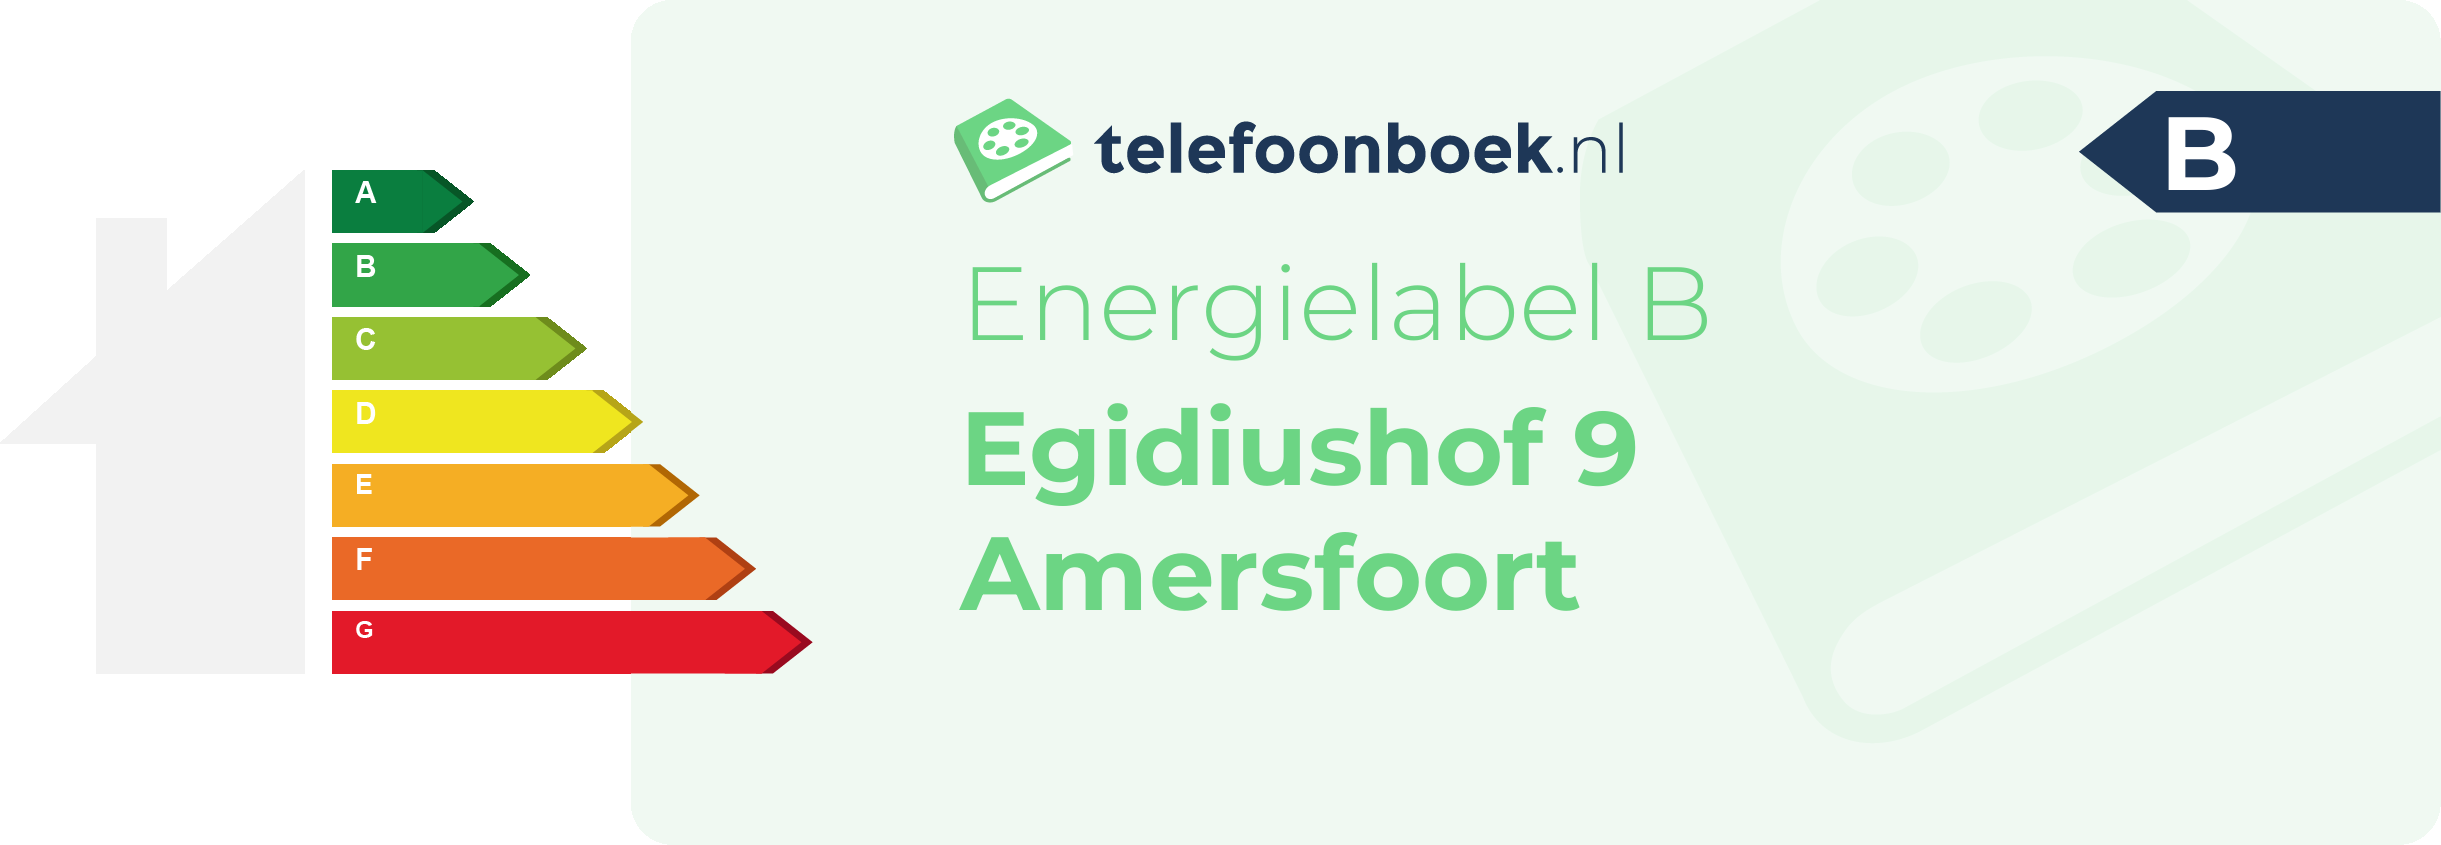 Energielabel Egidiushof 9 Amersfoort